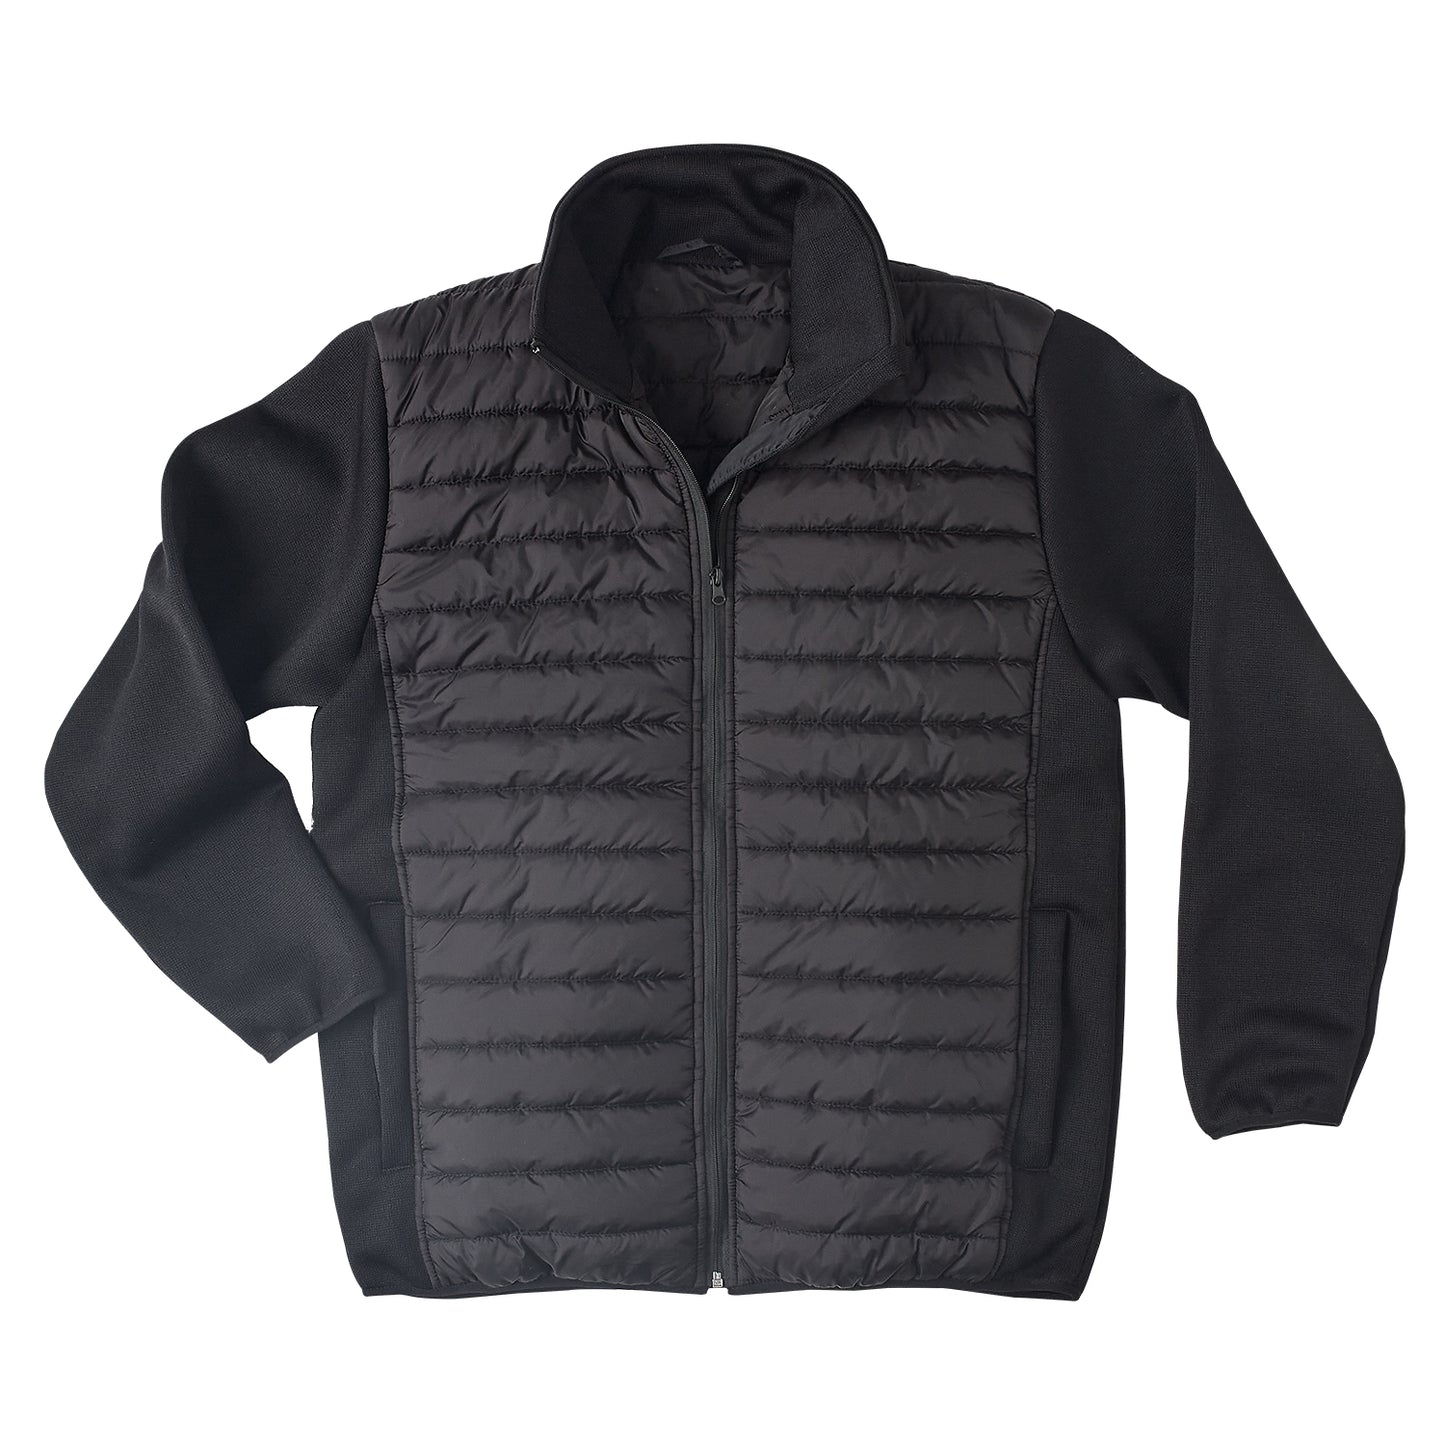 Brahma Vantage Corporate Padded Winter Jacket - Black